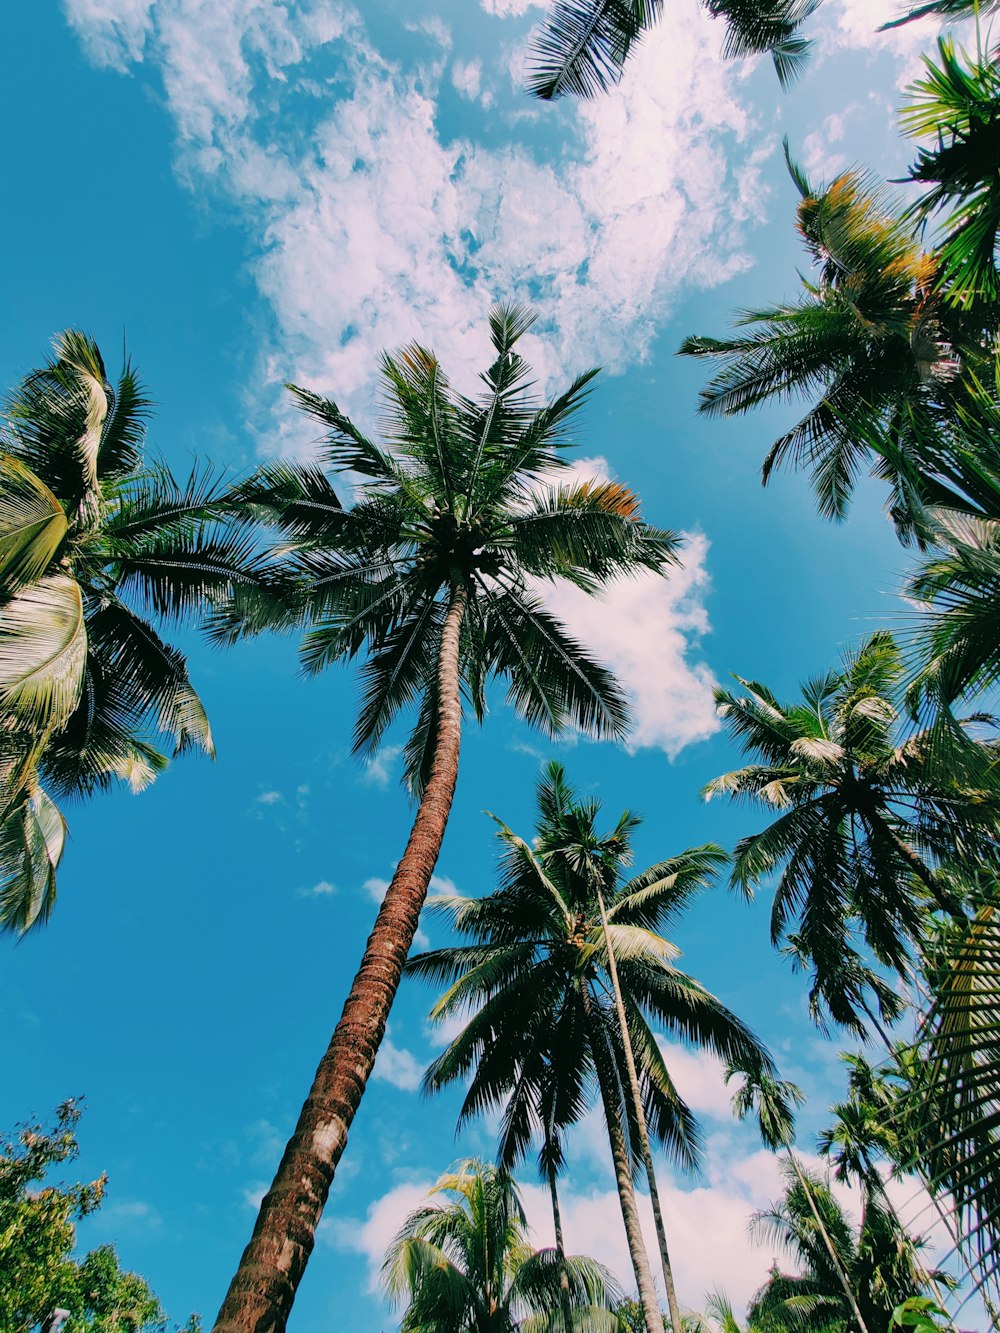 eine Palmengruppe mit blauem Himmel im Hintergrund